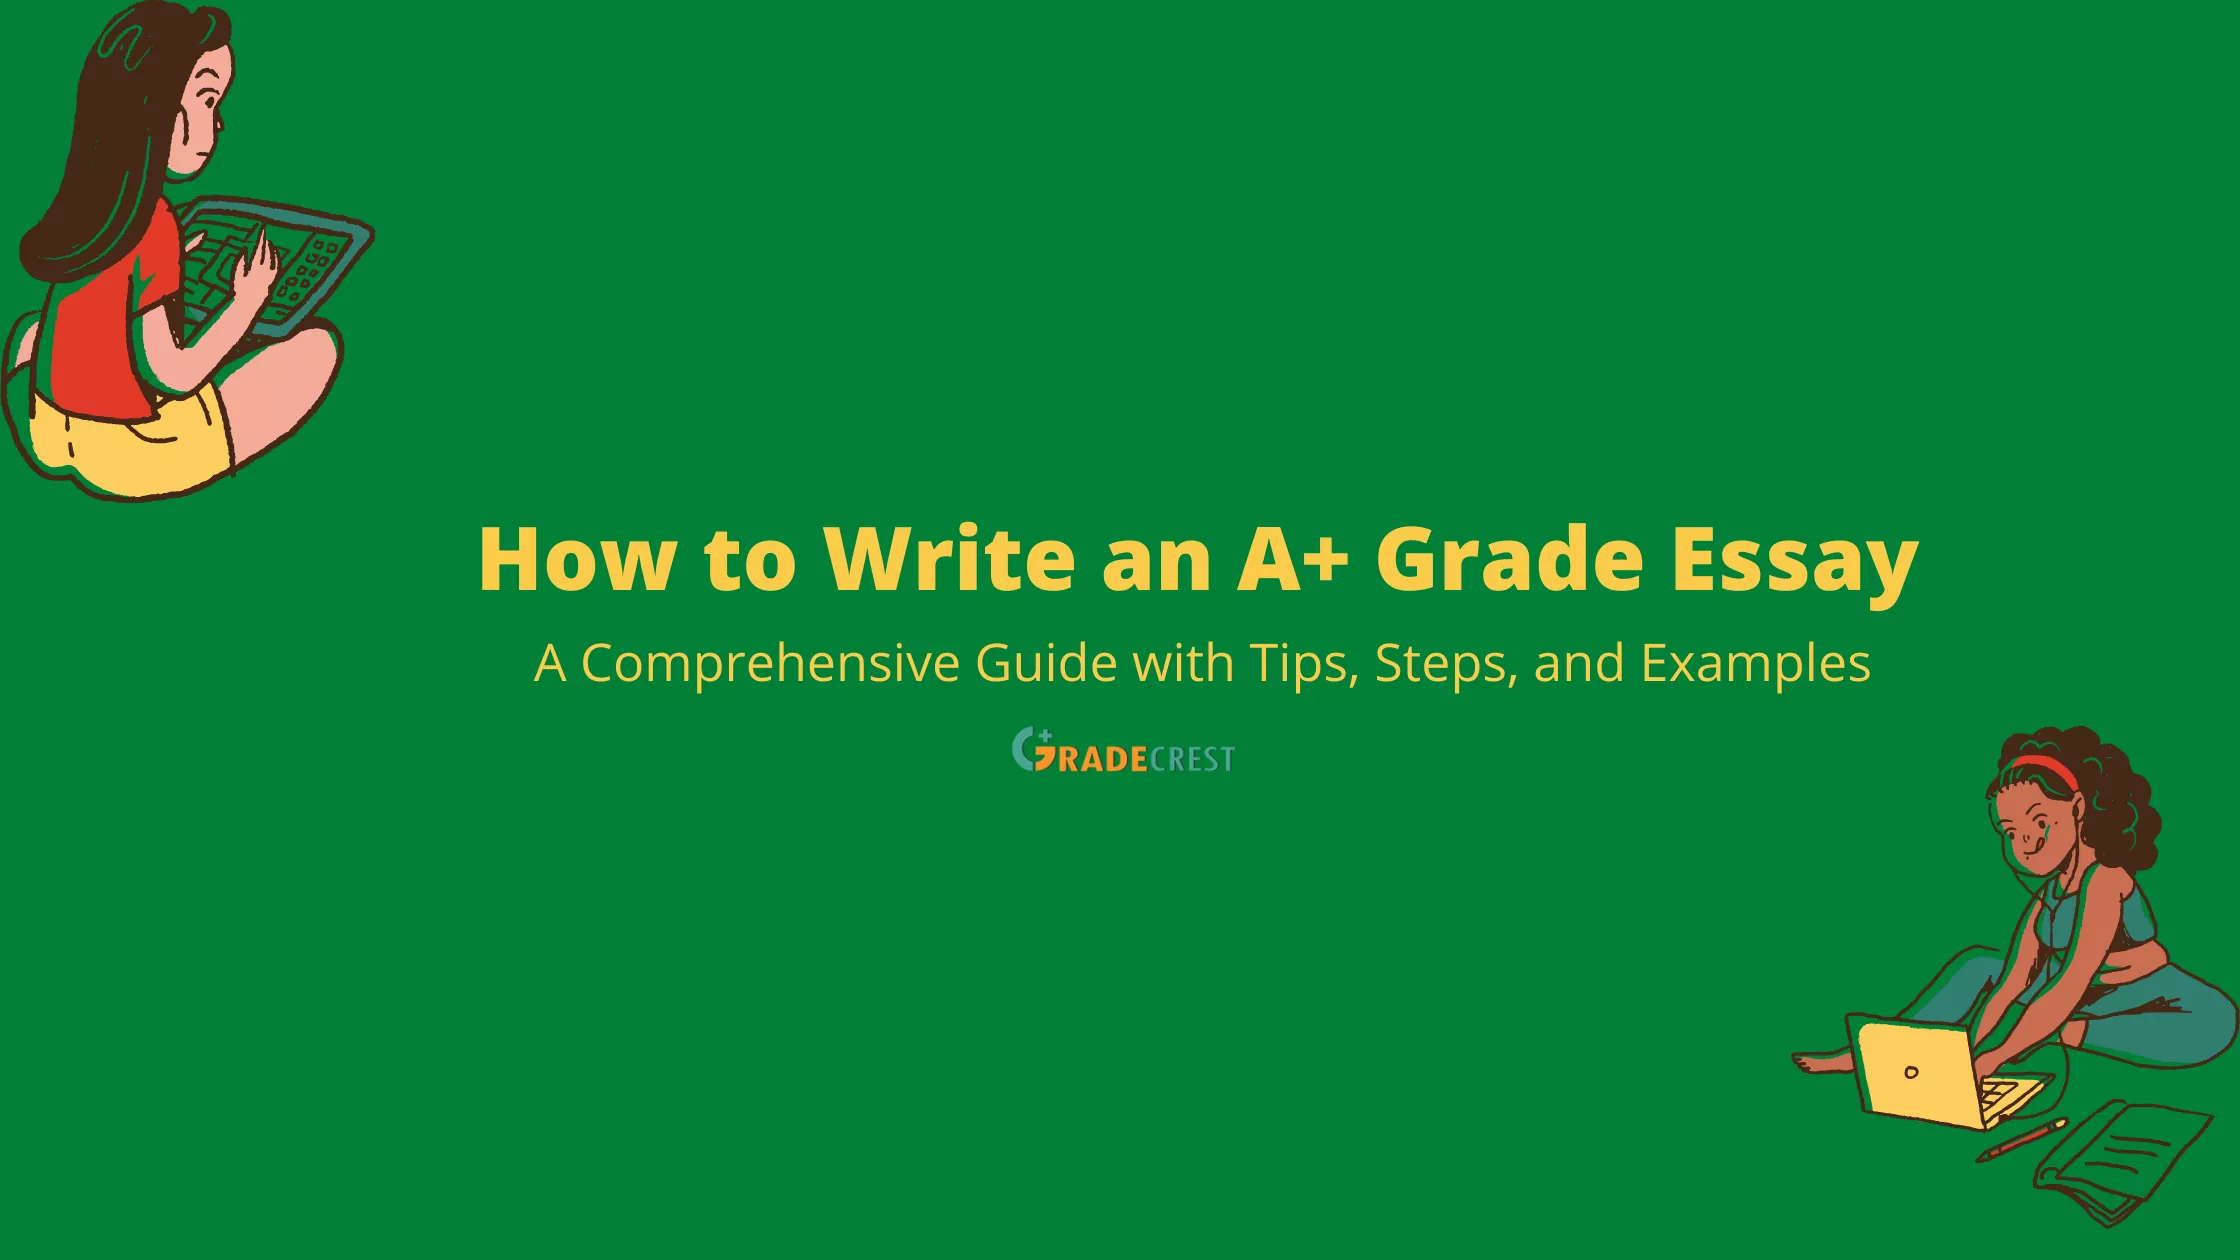 How to write an A+ grade essay